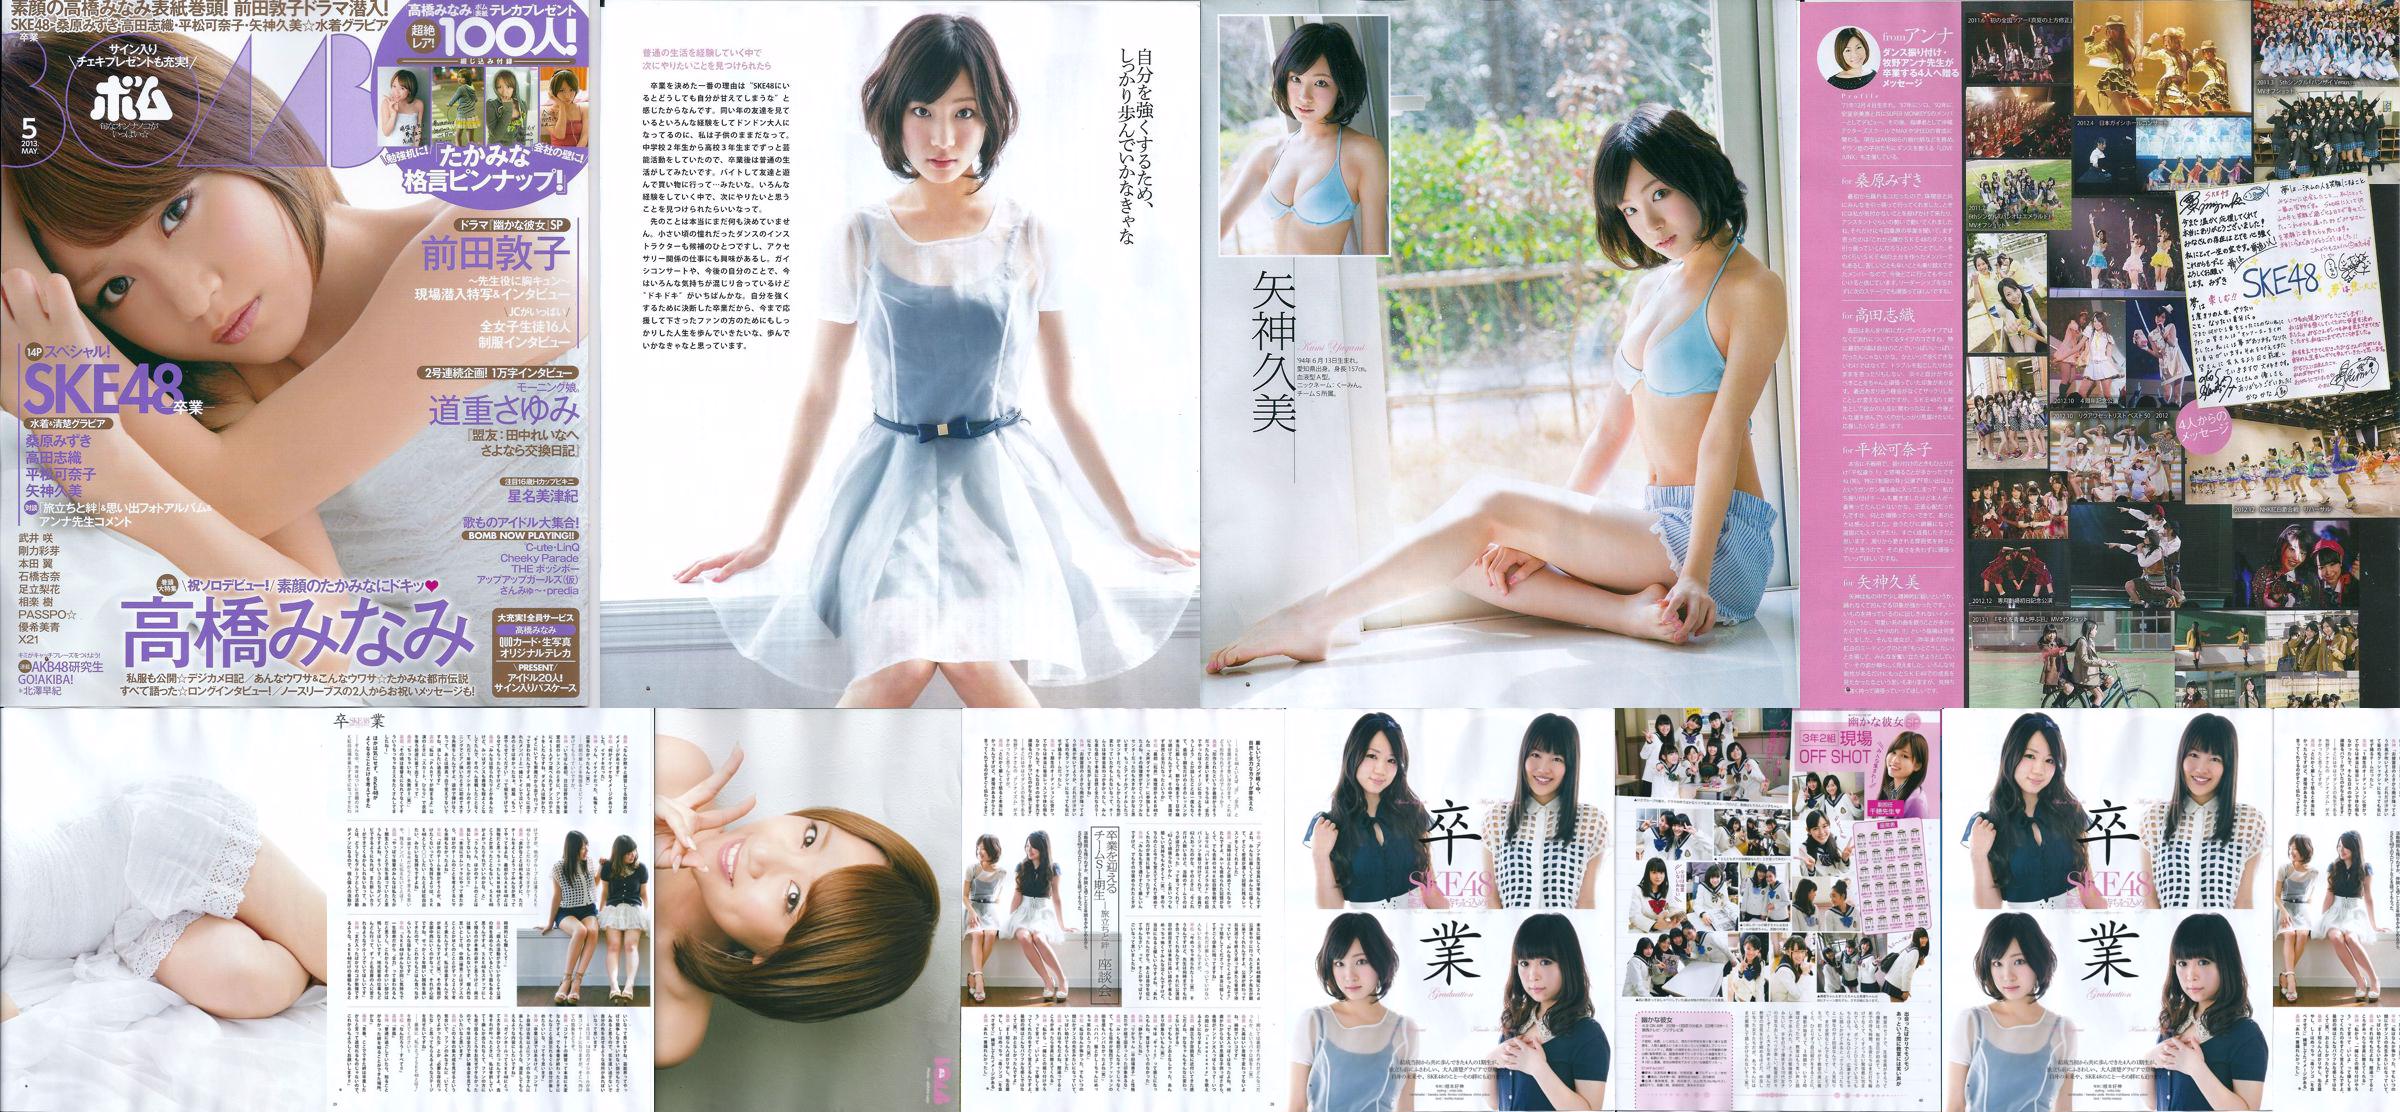 [Bomb Magazine] 2013 No.05 Kumi Yagami Minami Takahashi Atsuko Maeda Photo No.02e54b Page 1